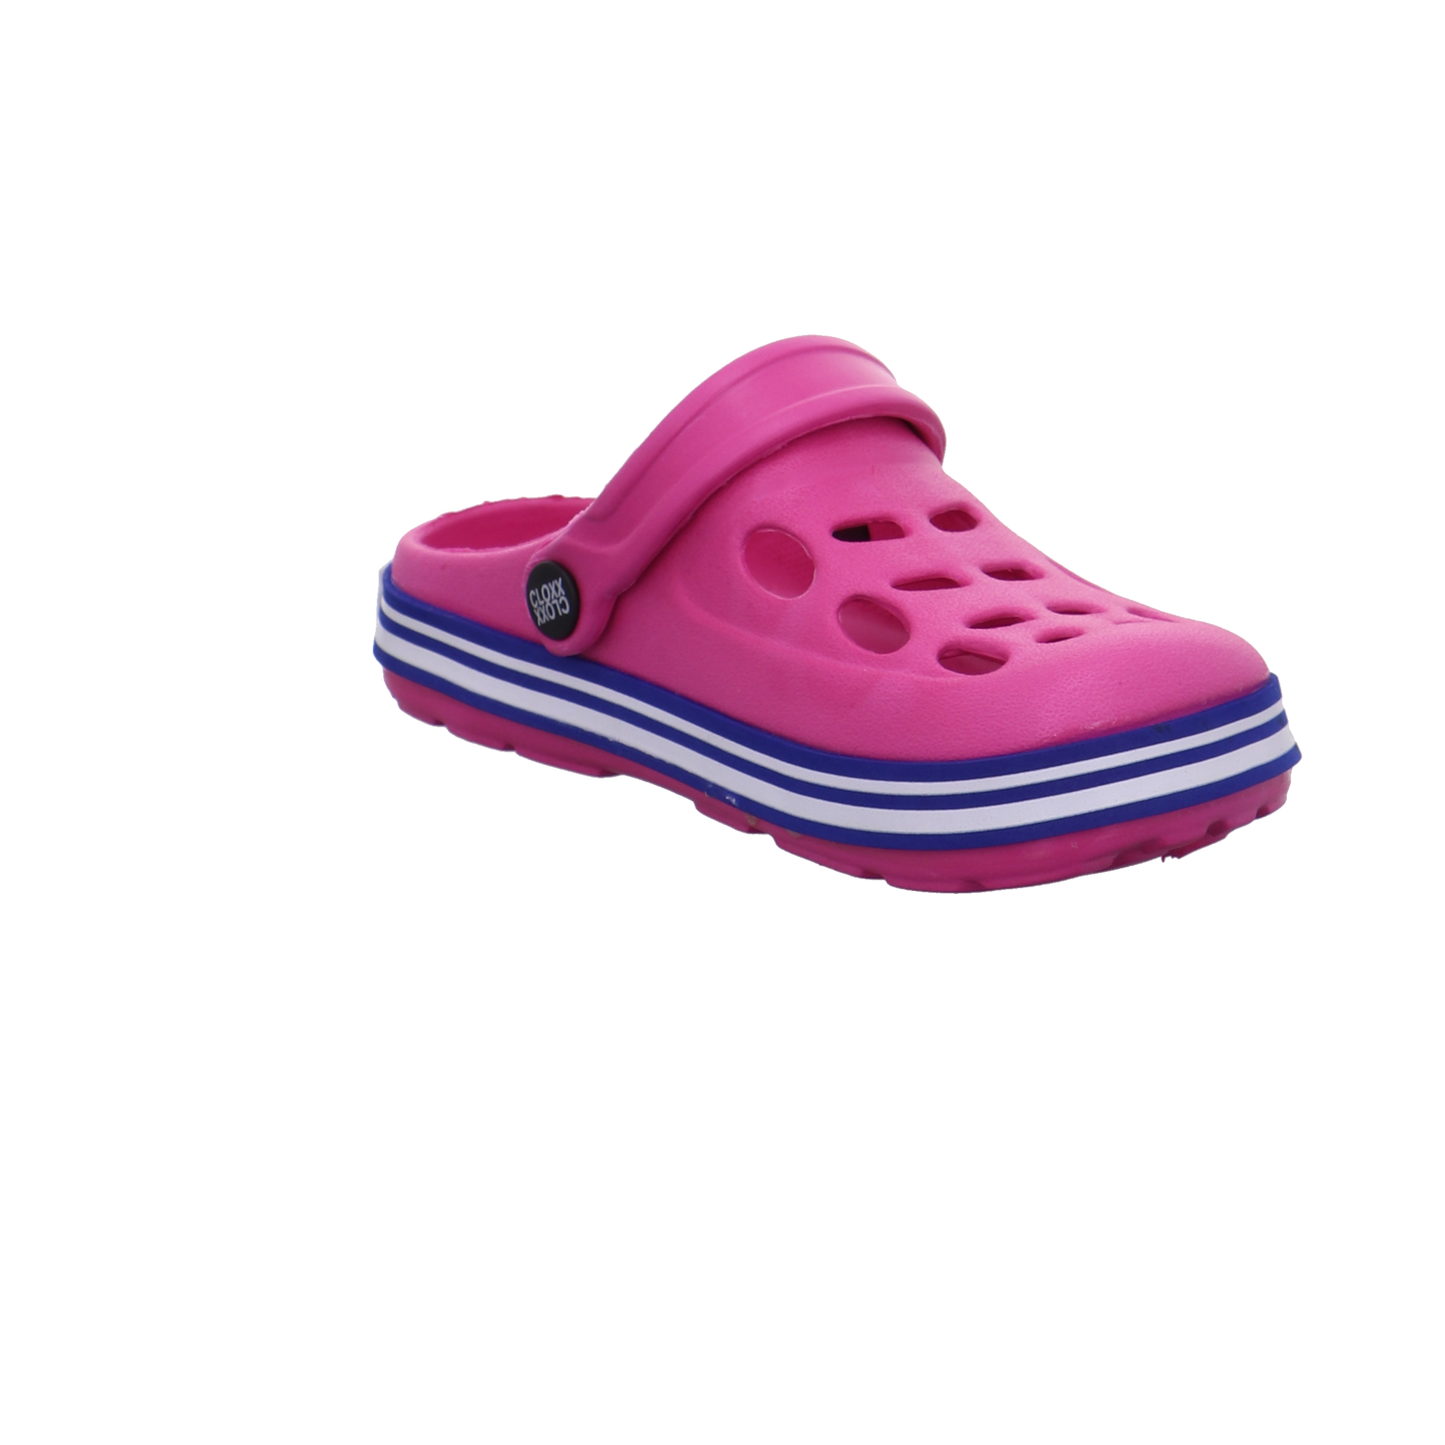 Cloxx Schuhe  pink Bild7